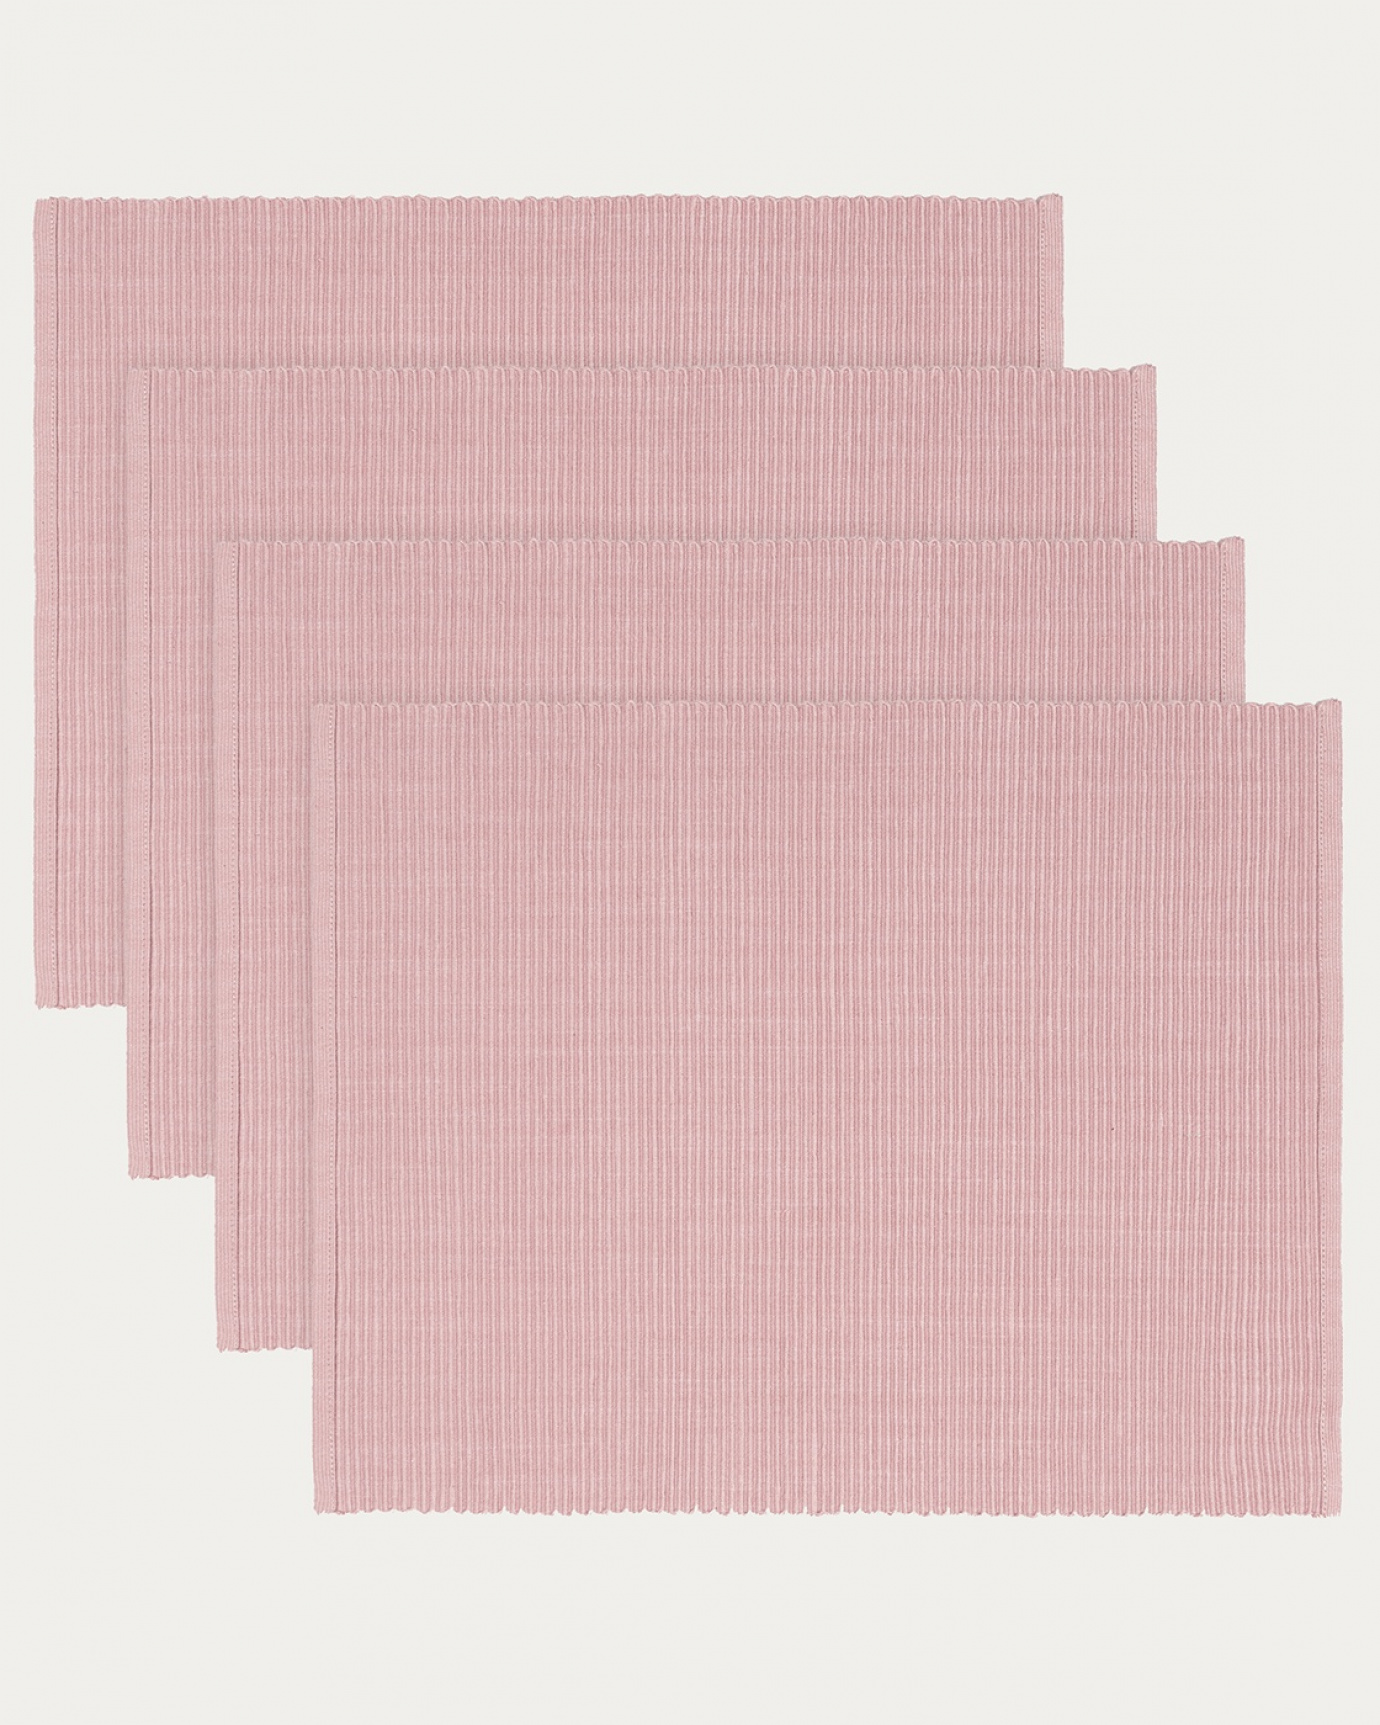 Immagine prodotto rosa antico tovaglietta UNI in morbido cotone a costine di qualità di LINUM DESIGN. Dimensioni 35x46 cm e venduto in 4-pezzi.